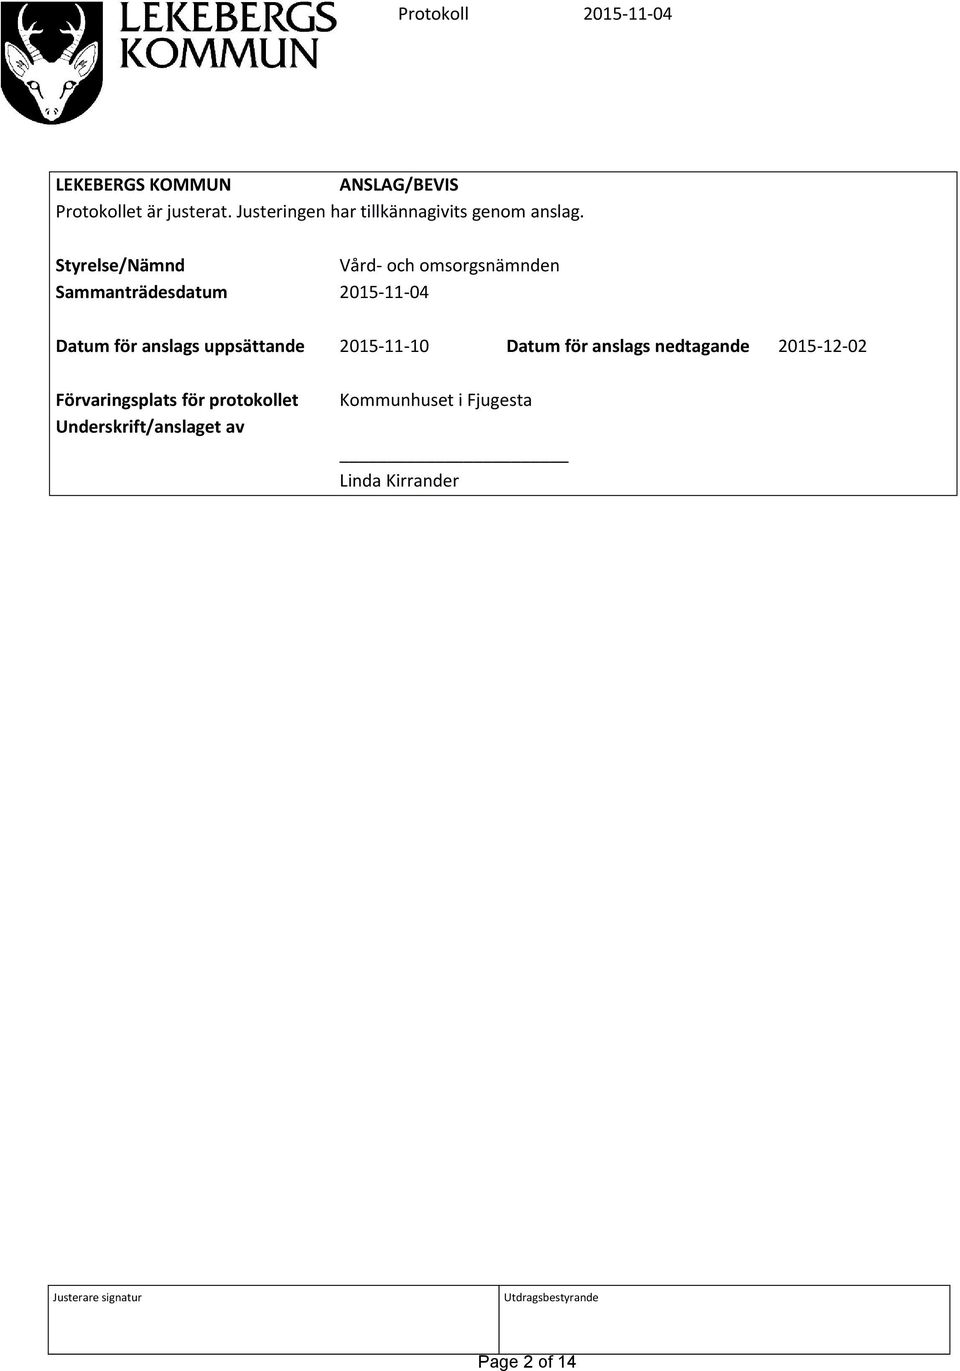 Styrelse/Nämnd Vård- och omsorgsnämnden Sammanträdesdatum 2015-11-04 Datum för anslags